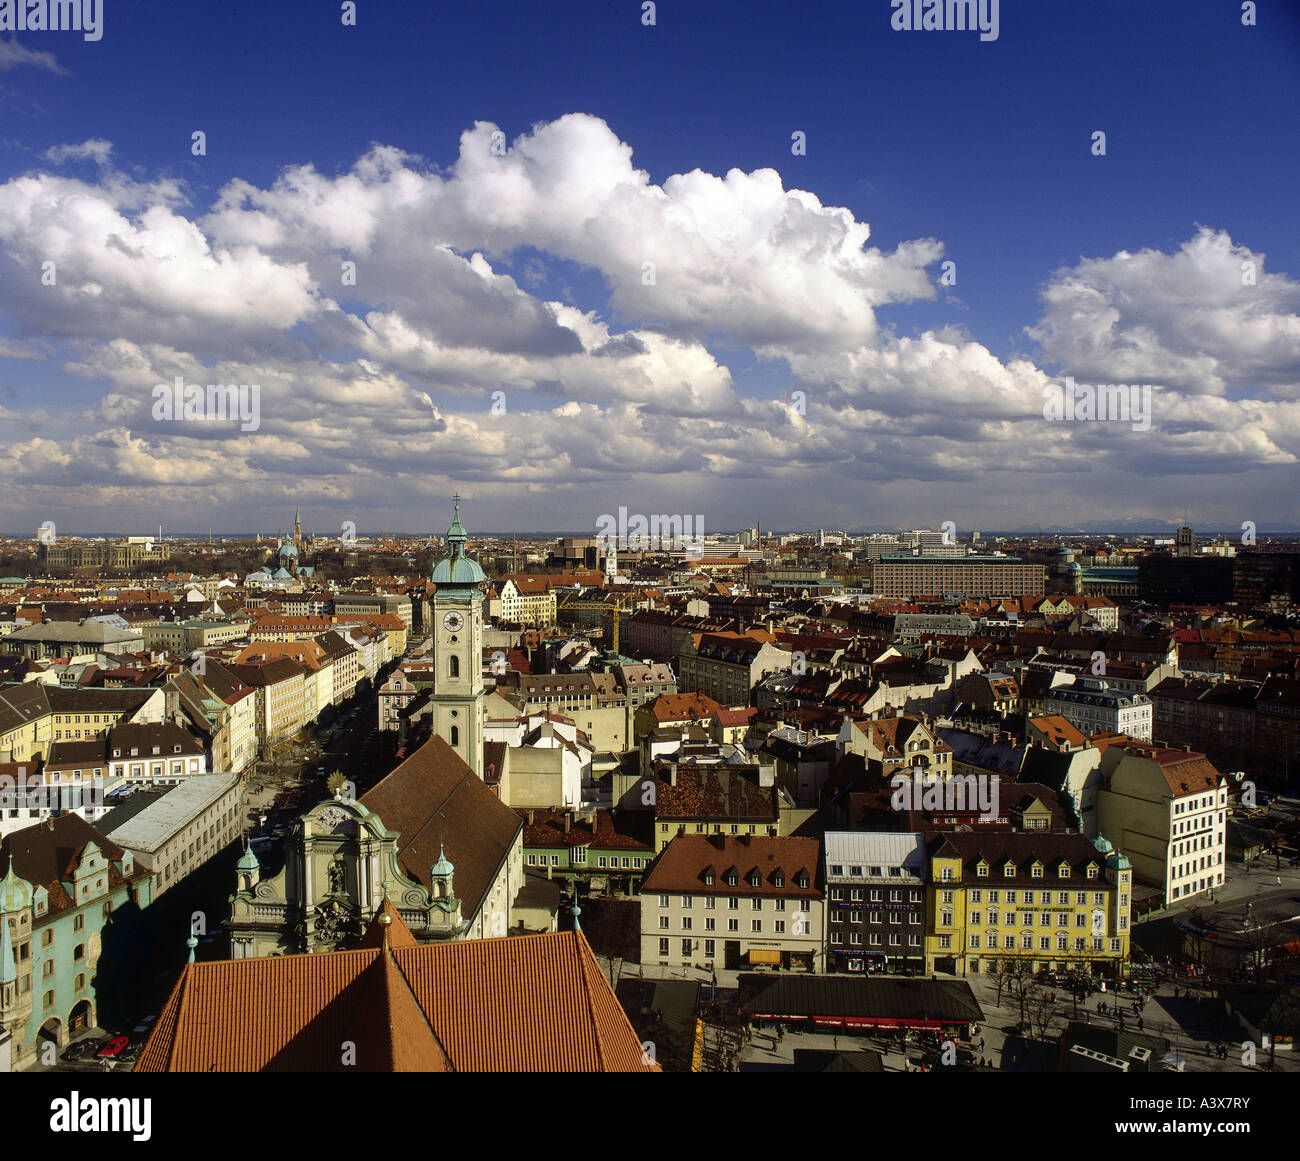 Geographie/Reise, Deutschland, Bayern, München, Stadtansicht, Stadtbild, Kirche "Alter Peter", Stockfoto